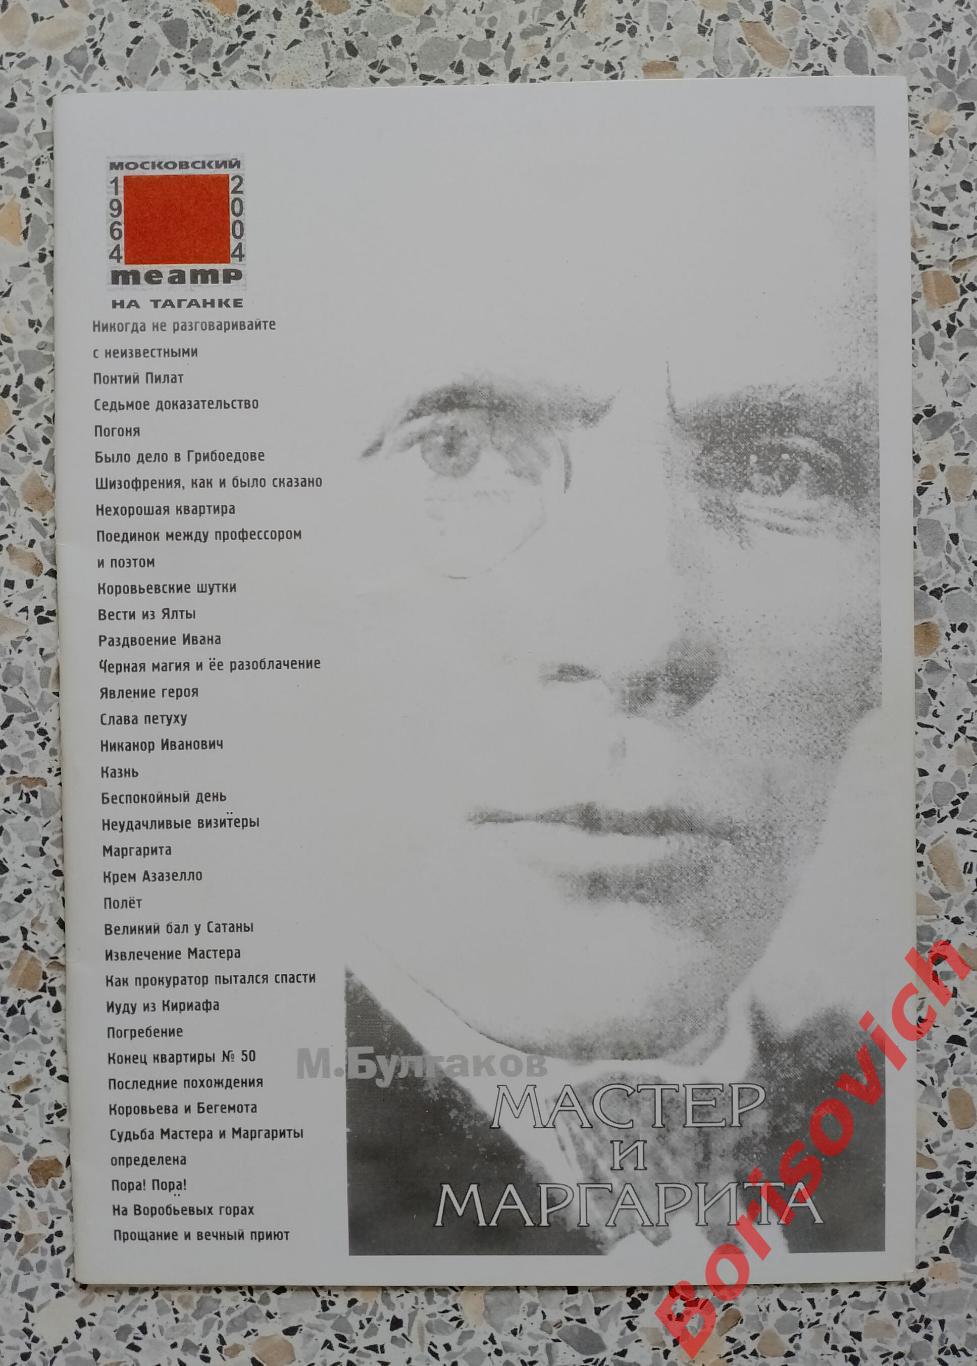 Программа Театр на Таганке М. БУЛГАКОВ МАСТЕР И МАРГАРИТА 2007